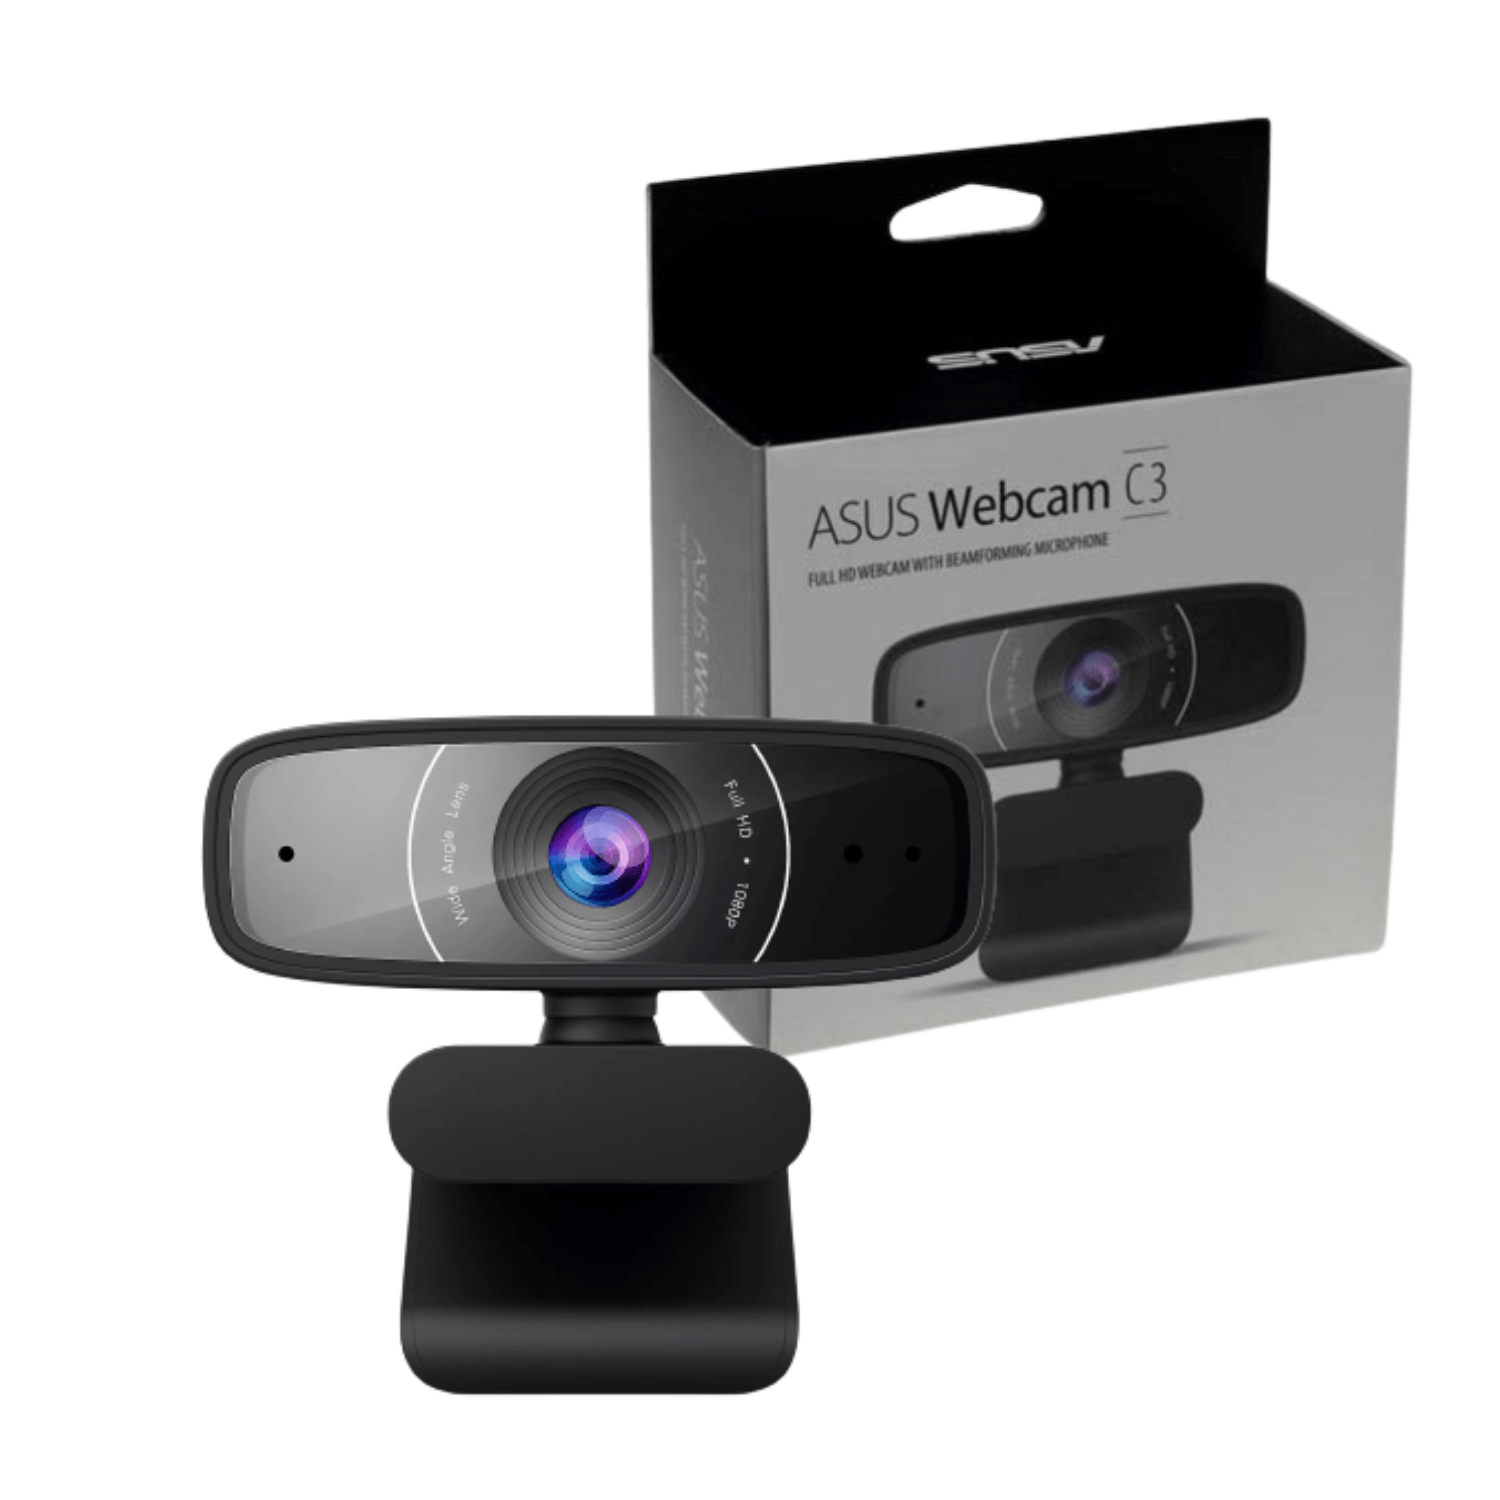 Camara Webcam Asus C3 Full Hd 30fps 1080p